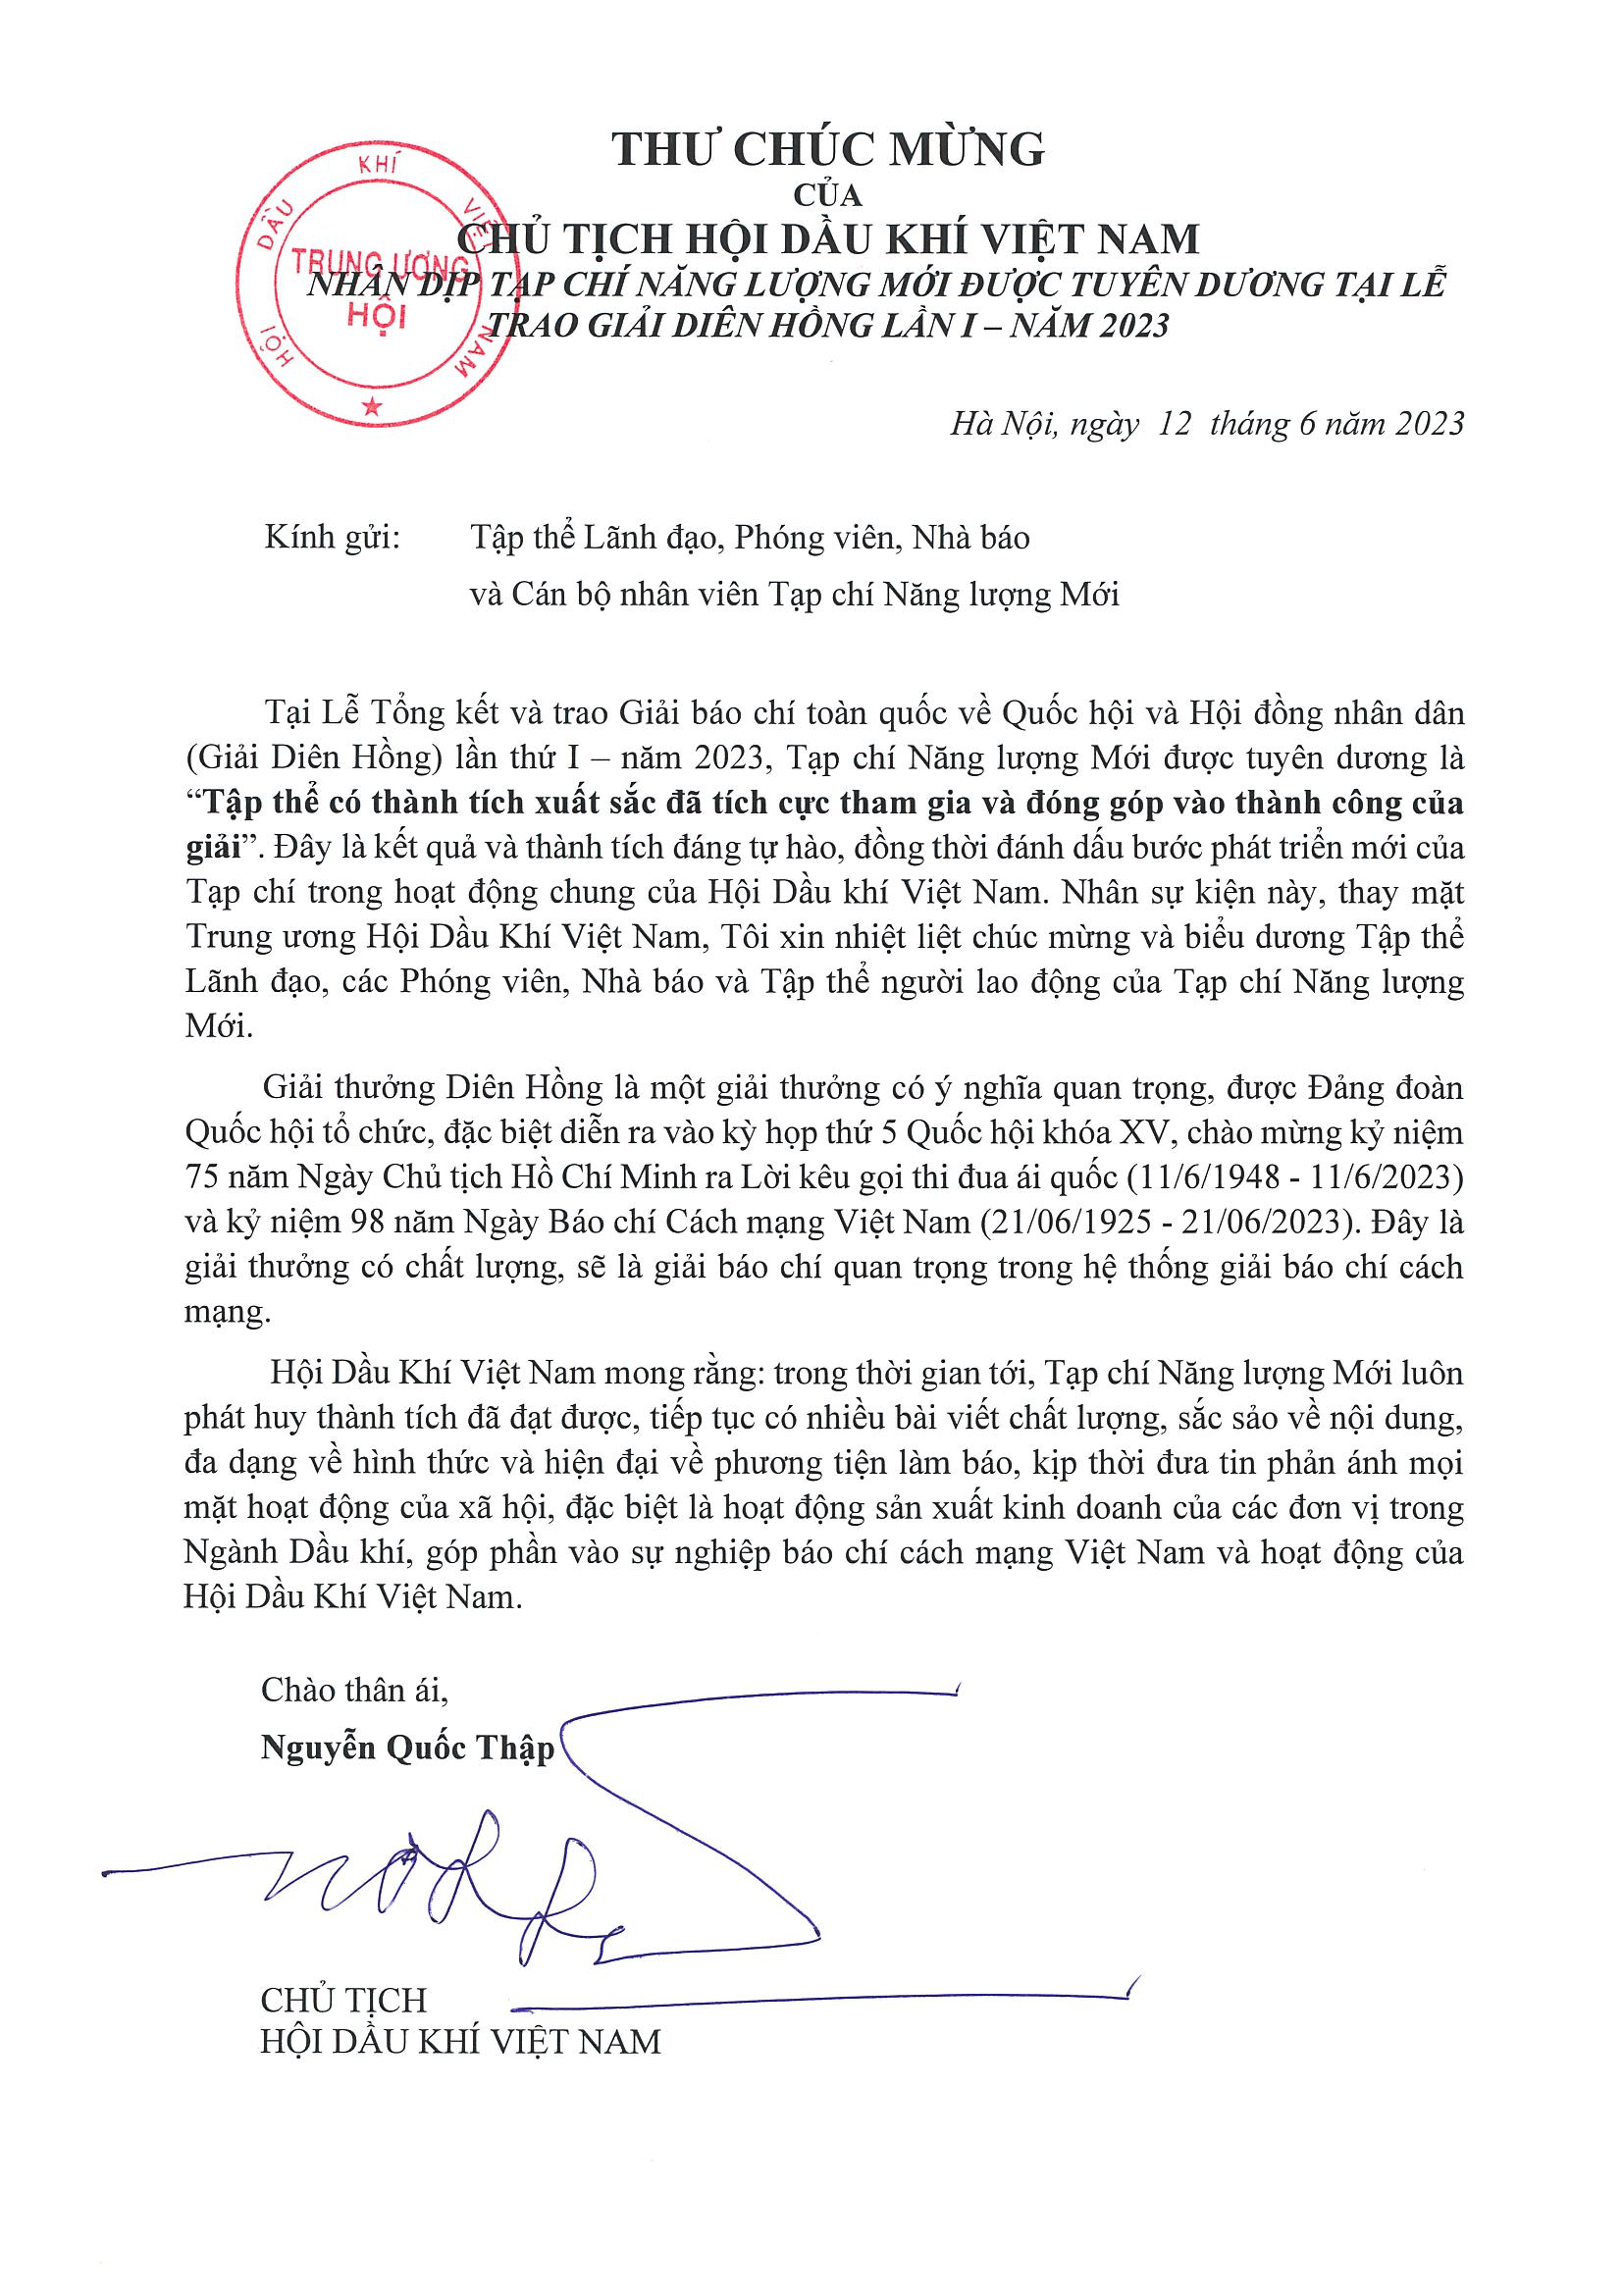 Chủ tịch Hội Dầu khí Việt Nam gửi thư chúc mừng Tạp chí Năng lượng Mới được tuyên dương tại Lễ trao giải Diên Hồng lần I